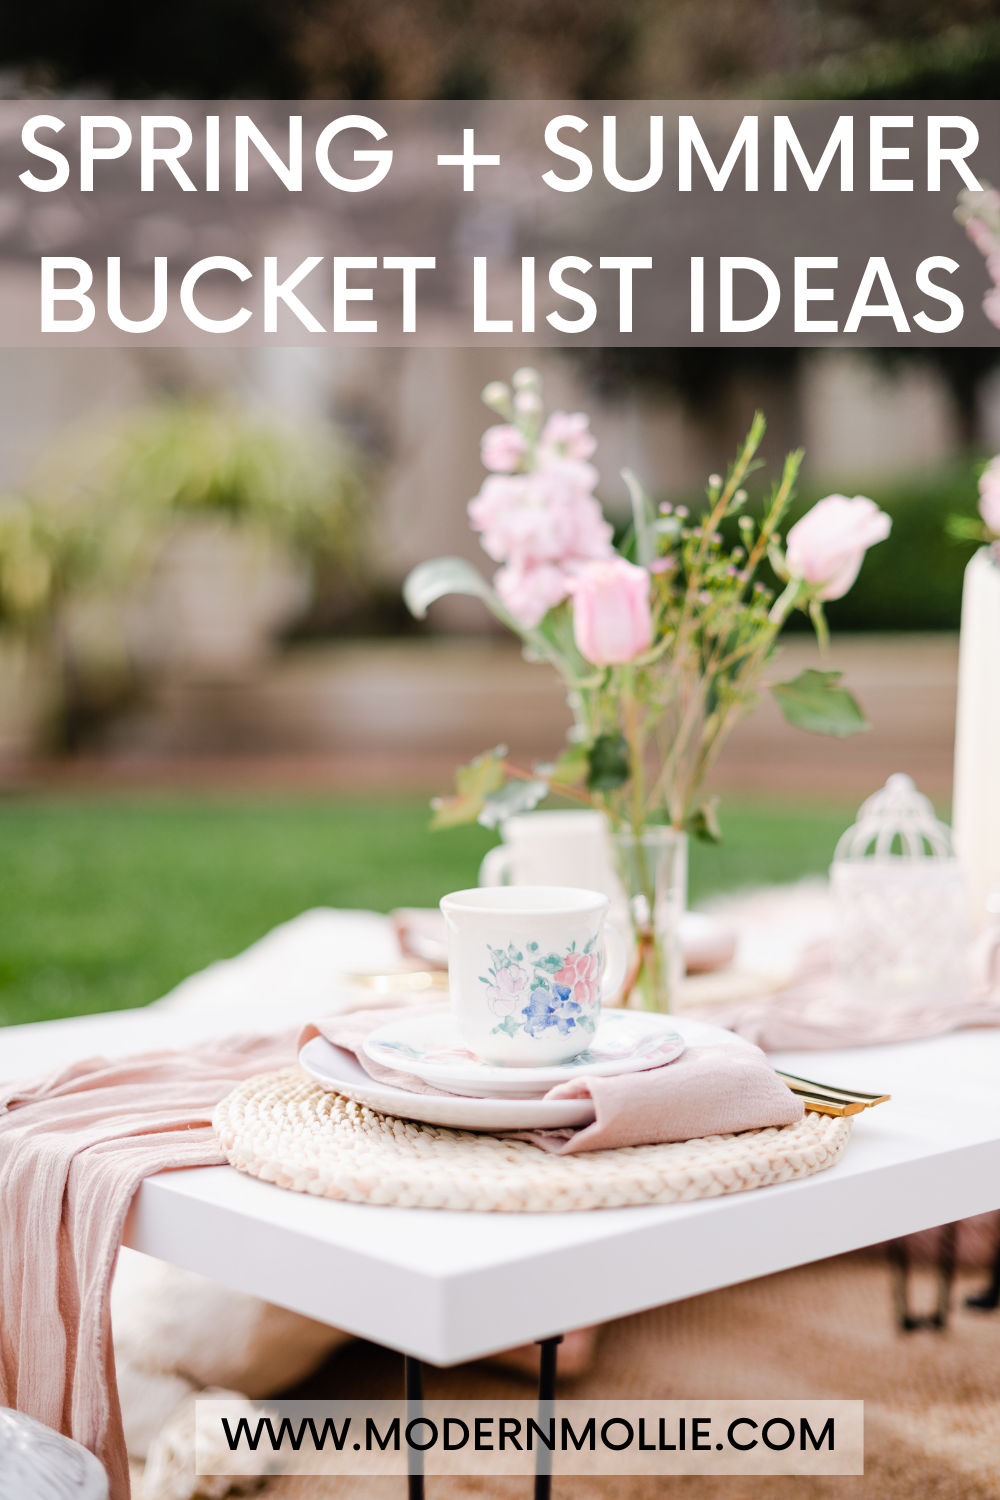 Spring + Summer Bucket List Ideas